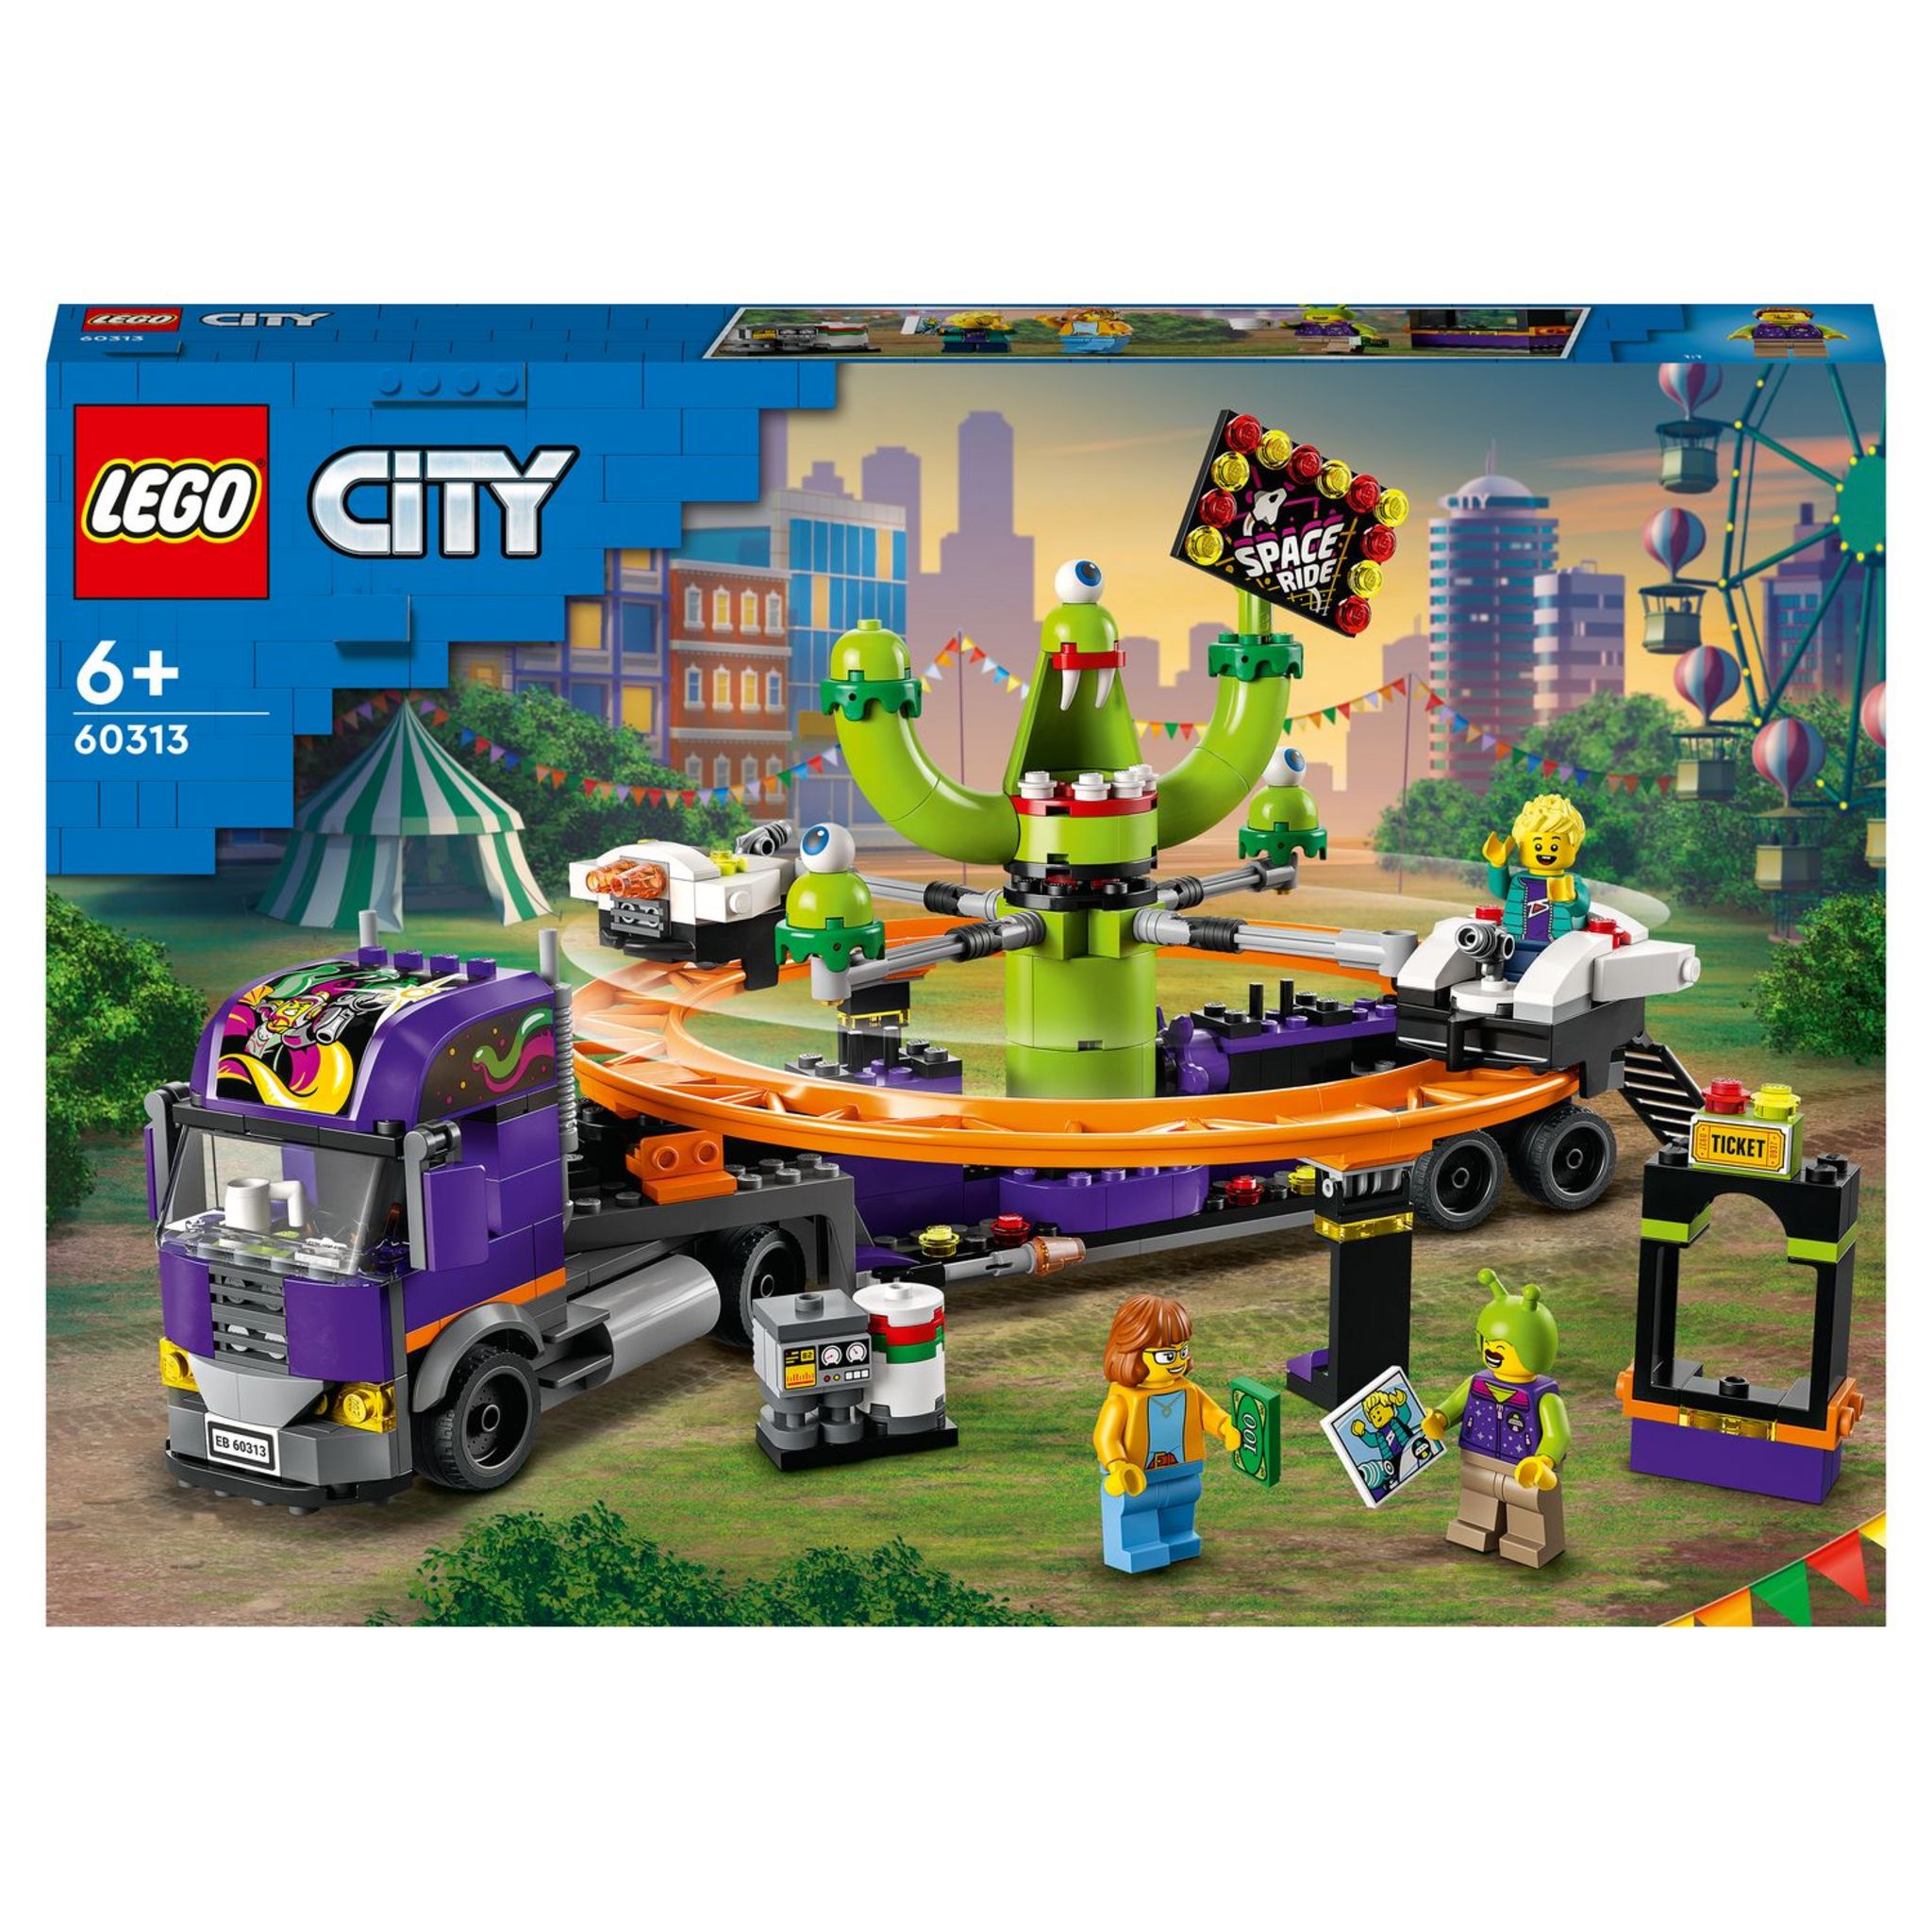 LEGO City 60313 Le Manège de l’Espace sur son Camion, Remorque, Jouet  sur l'Astronomie pas cher 